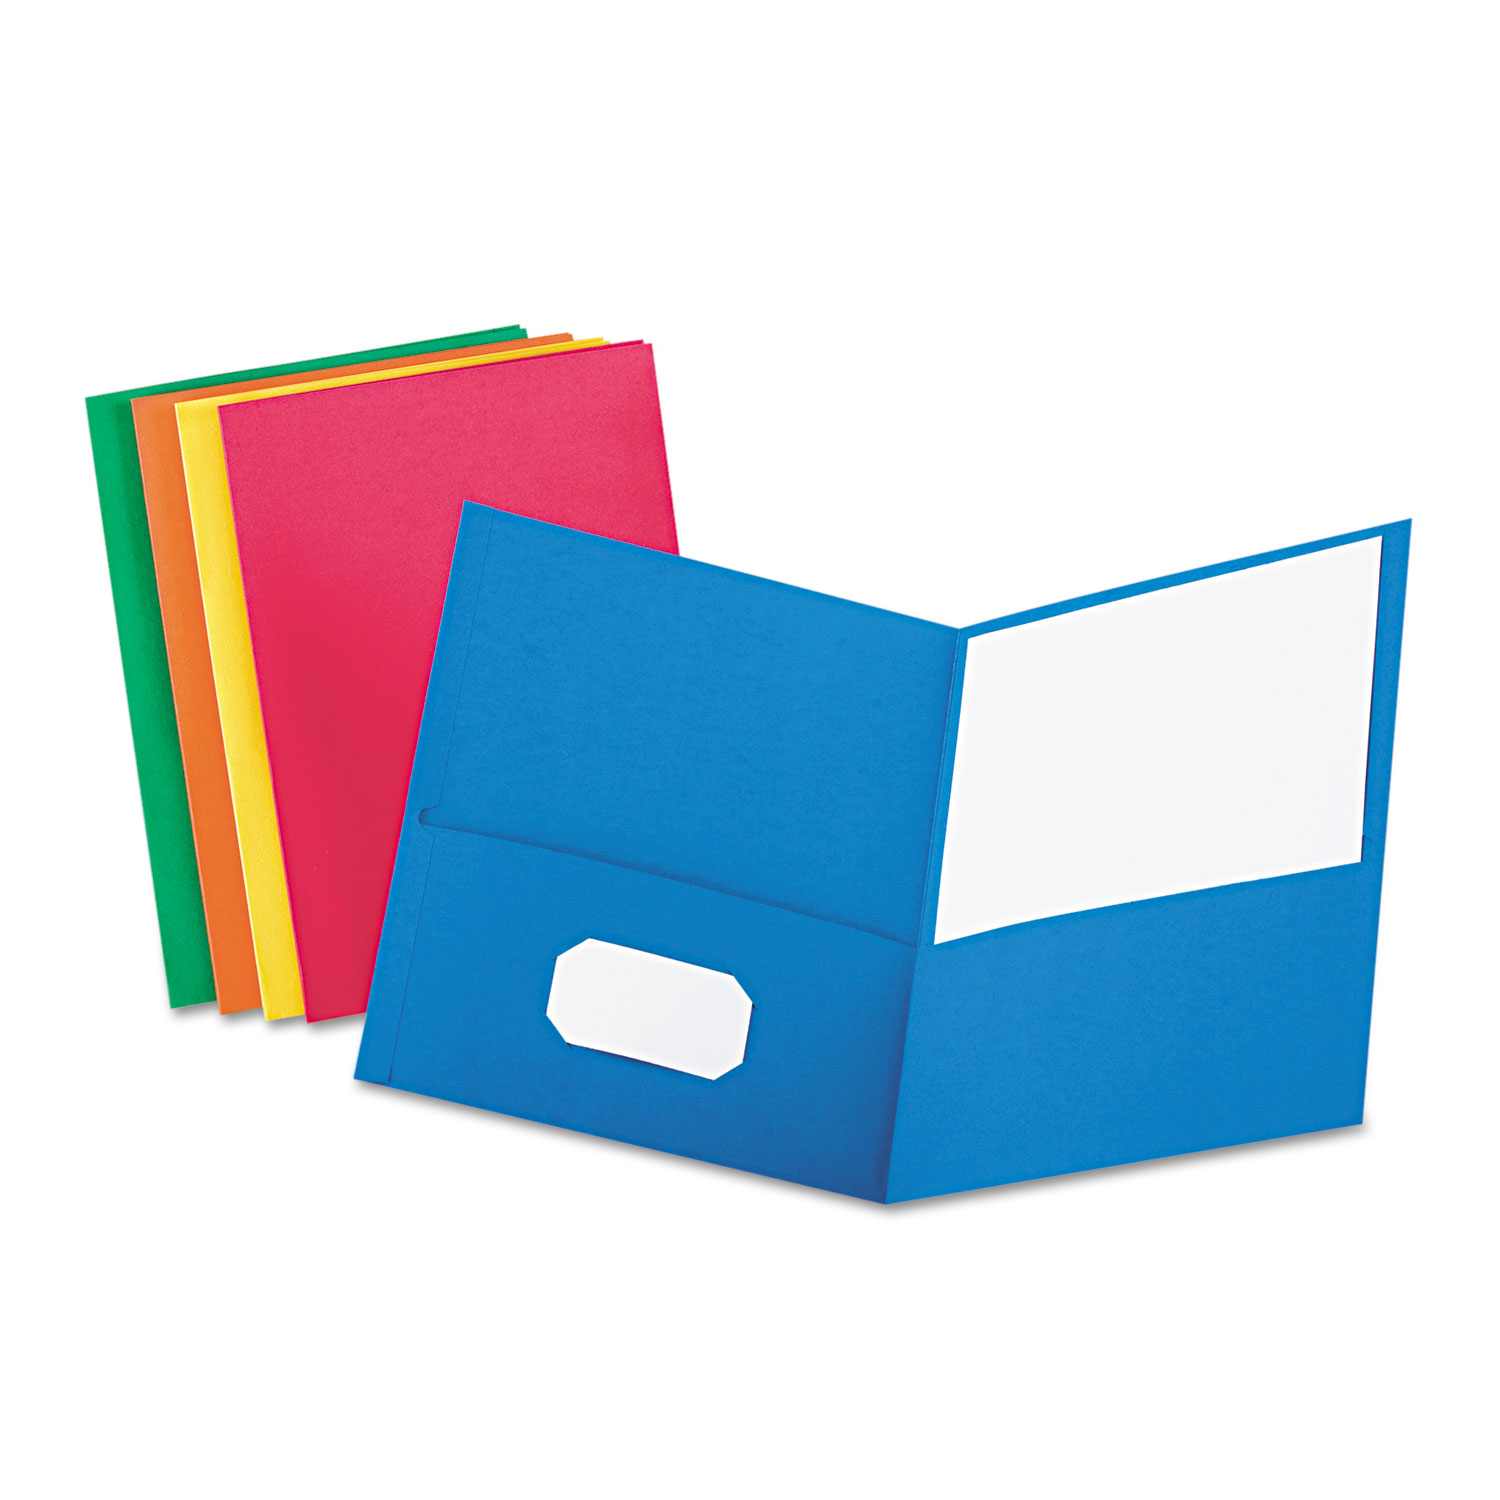 2-Pocket Textured Paper Folders, Green, Pack Of 10 - Zerbee